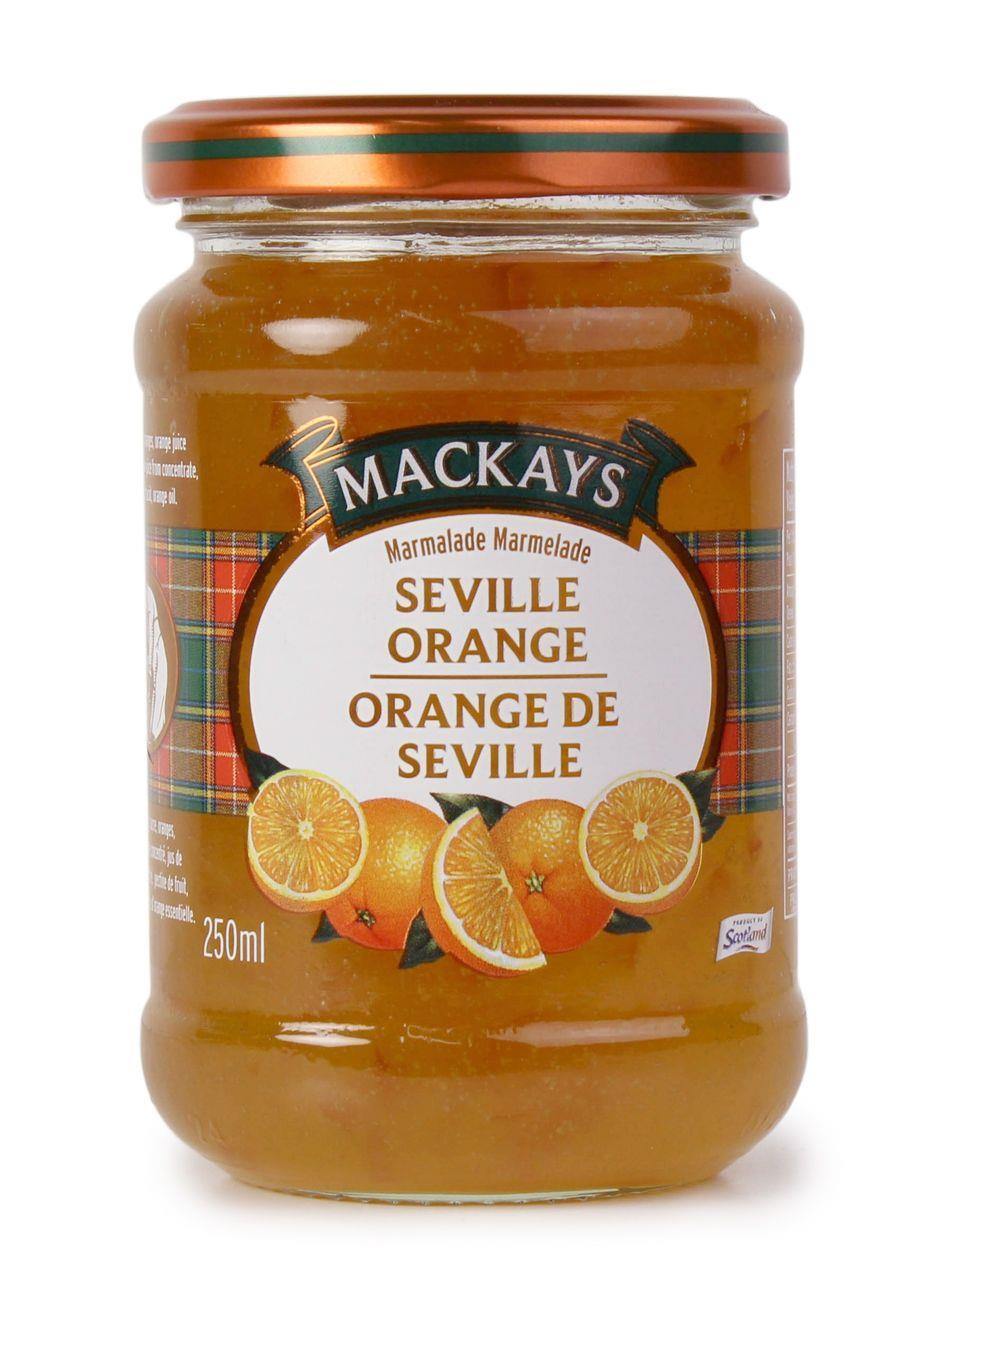 MacKays Seville Orange Marmalade 250ml - Kitchenalia Westboro